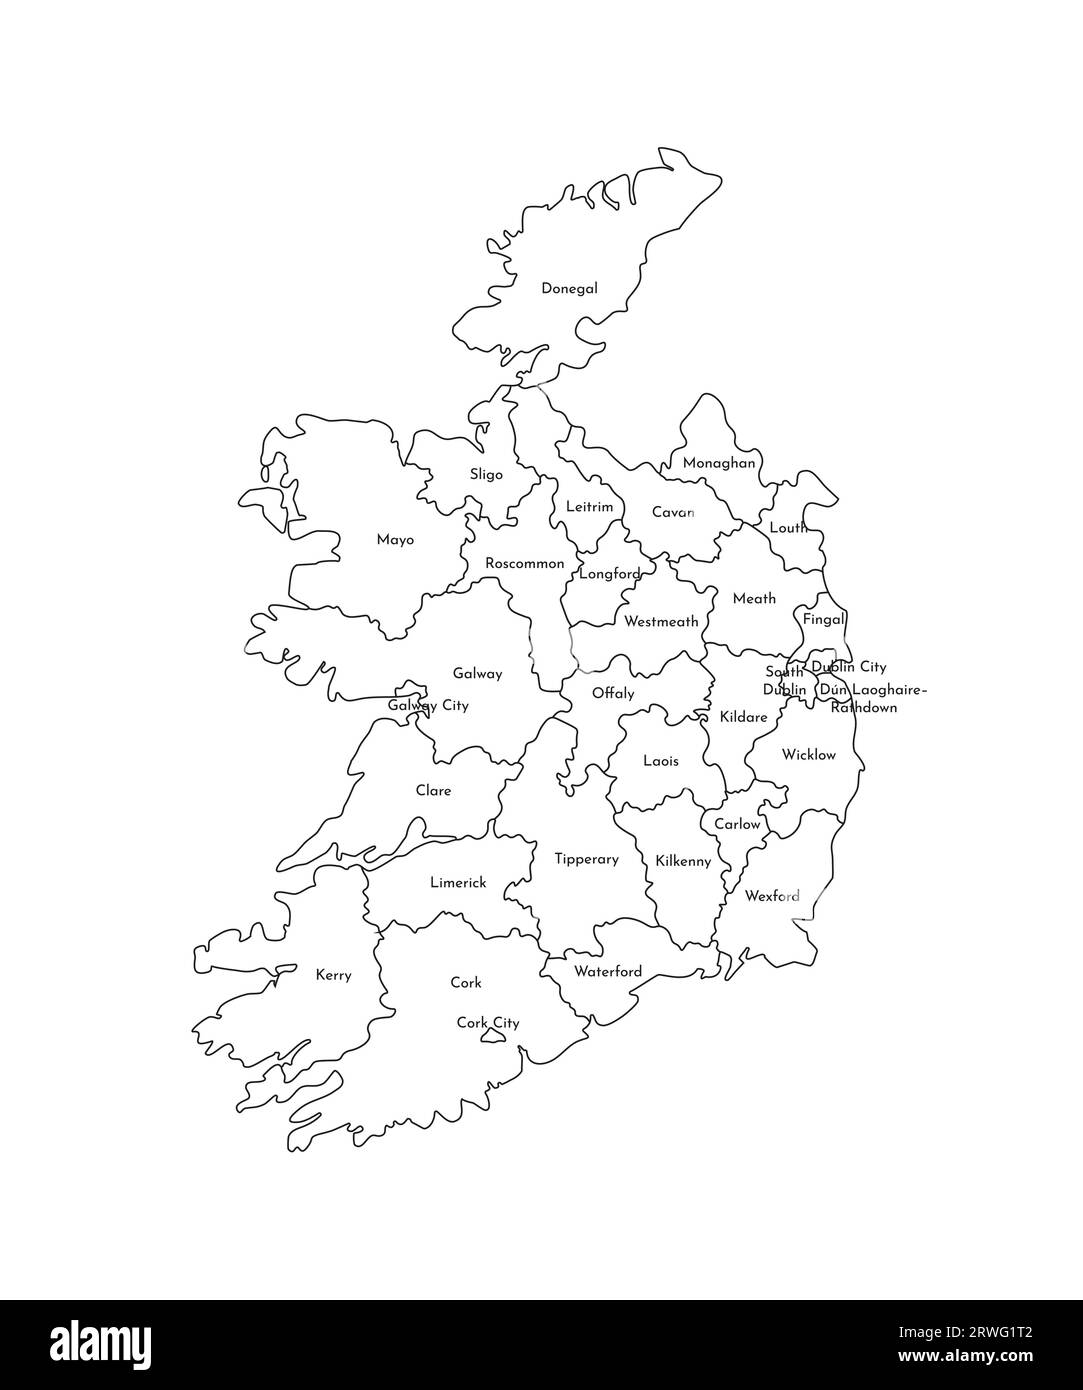 Vektorisolierte Illustration einer vereinfachten Verwaltungskarte der Republik Irland. Grenzen und Namen der Regionen. Silhouetten mit schwarzen Linien. Stock Vektor